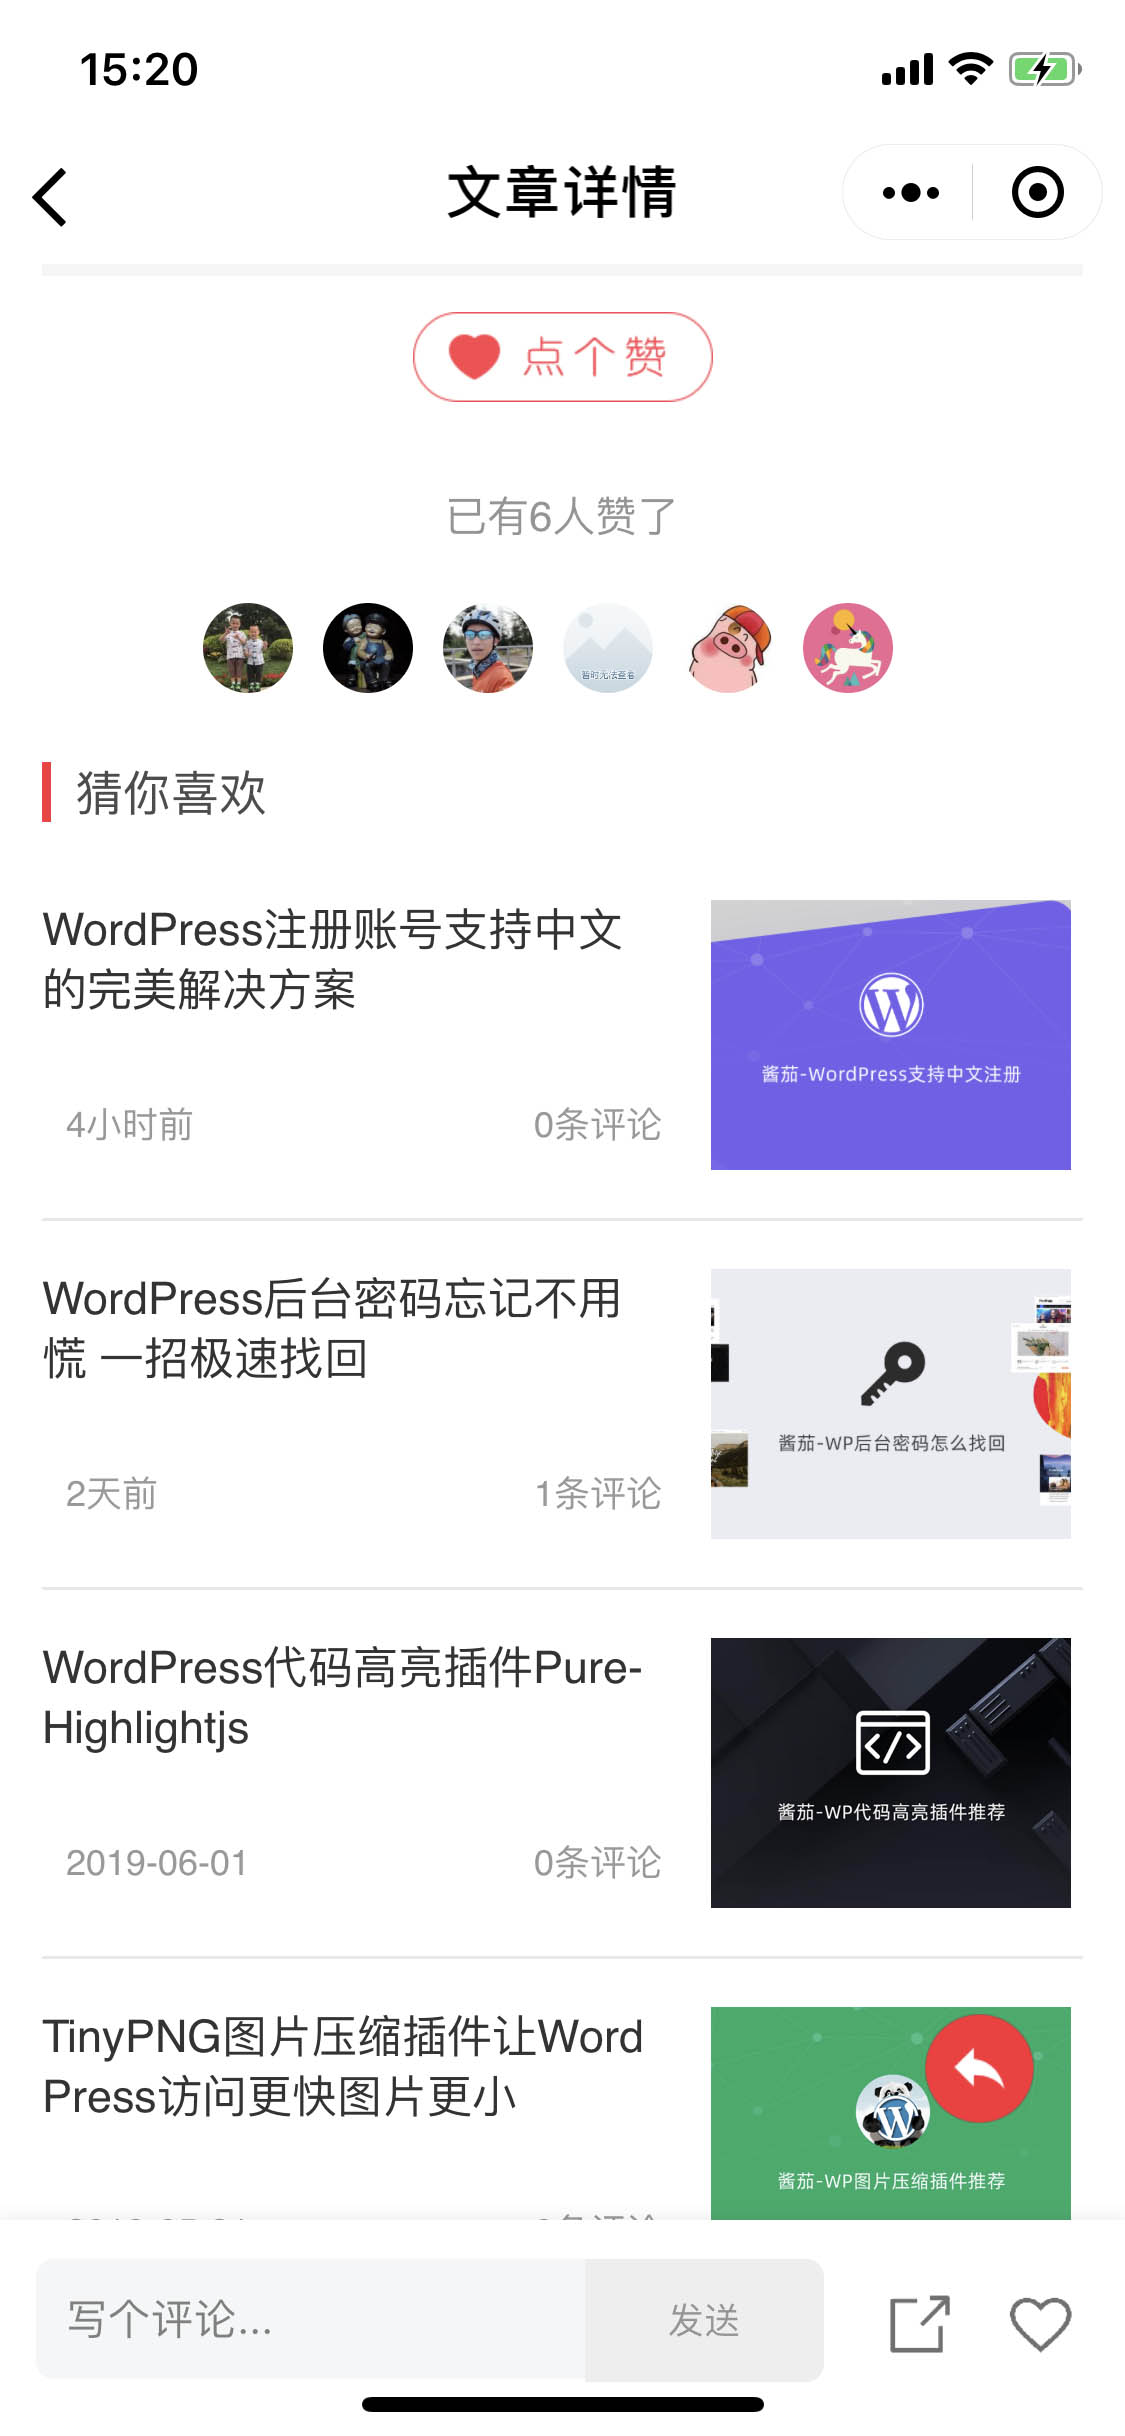 WordPress中文网_WordPress中文网小程序_WordPress中文网微信小程序